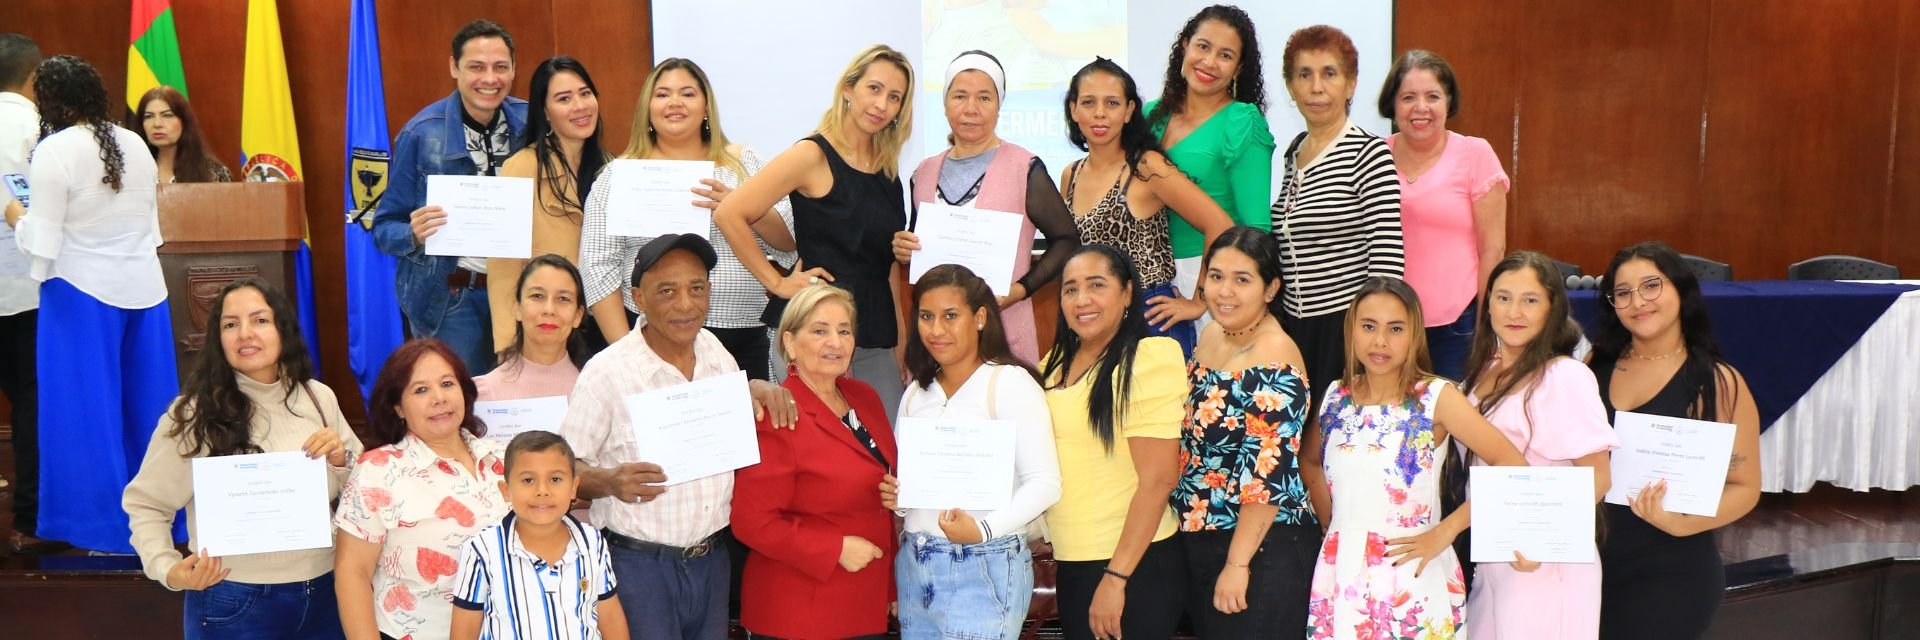 Programa de Enfermería UDES celebró el éxito del proyecto 'Cuidando a los cuidadores' en varios sectores de Bucaramanga